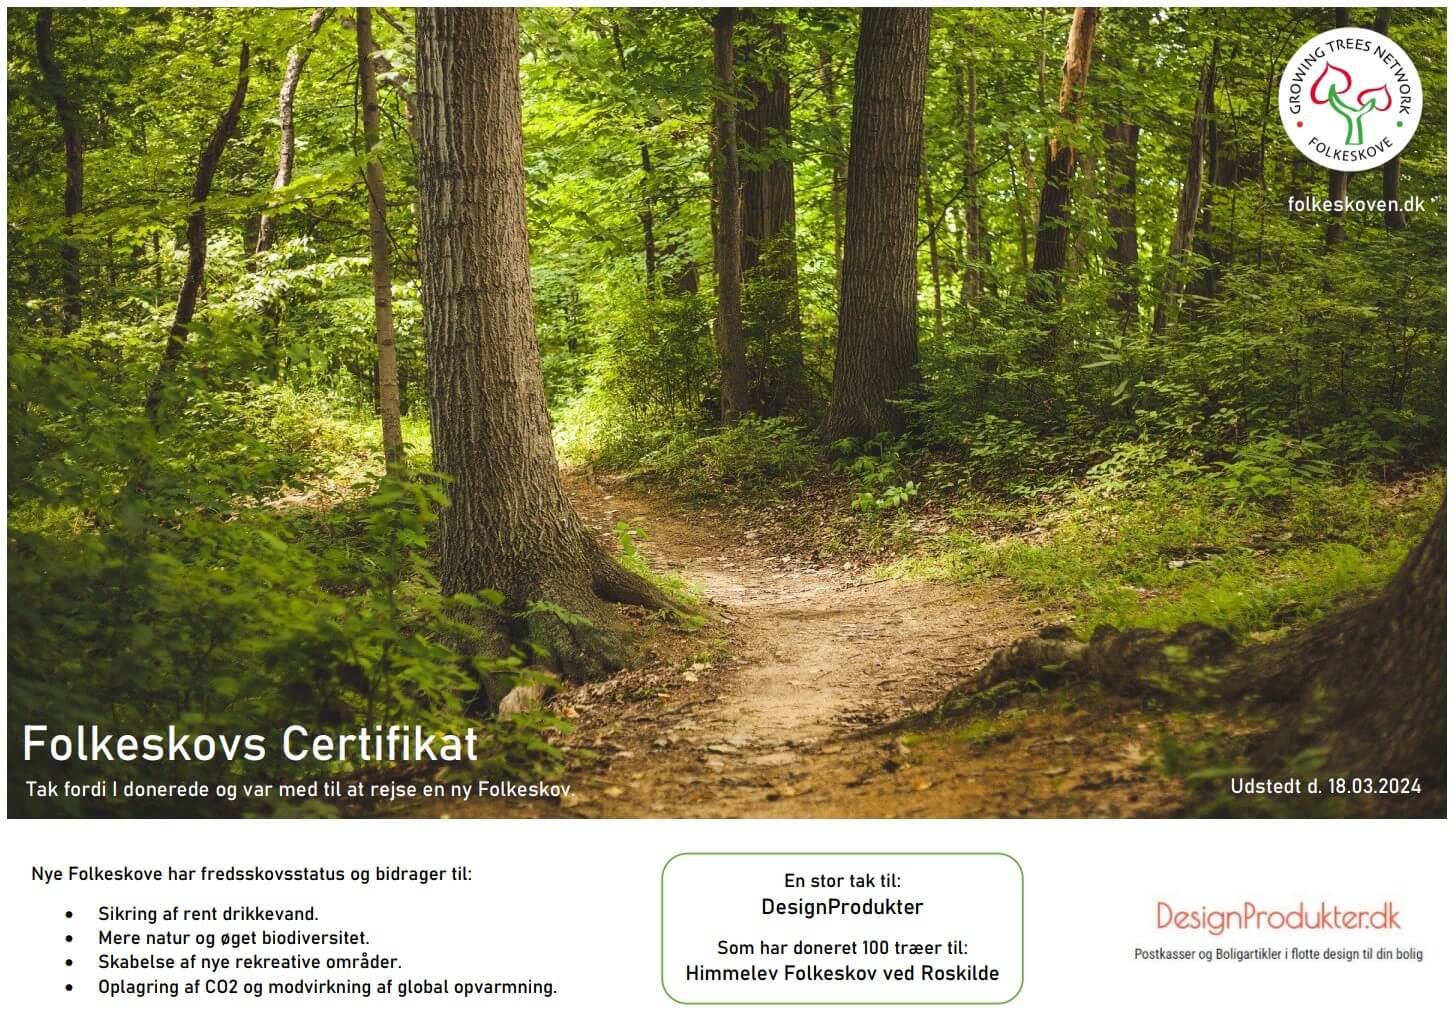 DesignProdukters Certifikat for at hjælpe med at plante træer i danske folkeskove.